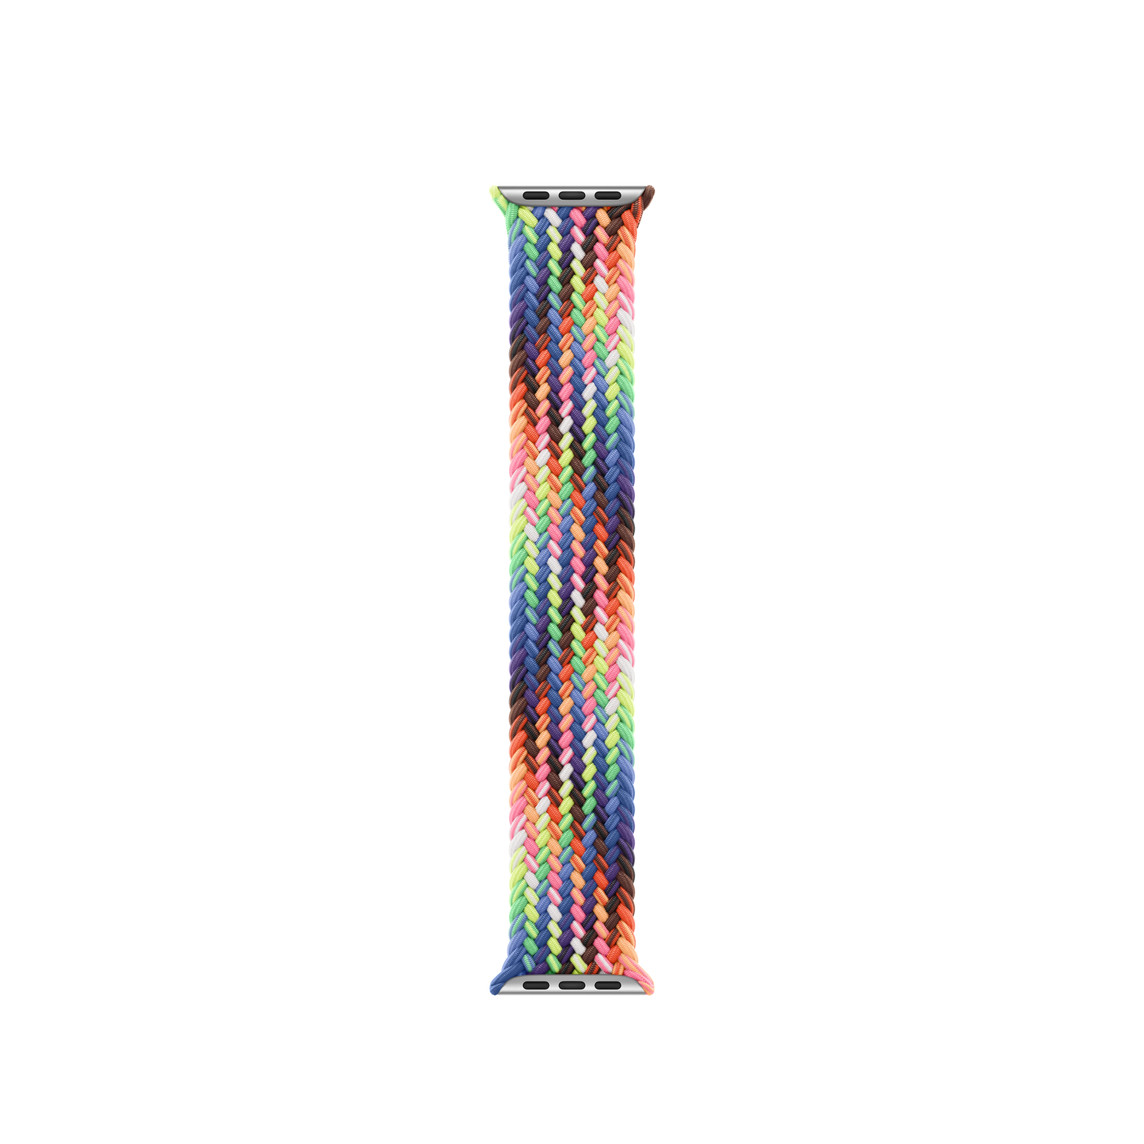 Pletený navlékací řemínek Pride Edition, vlákna tkaná v neonové paletě barev inspirované zářivou duhovou vlajkou Pride, žádné zapínání ani přezka